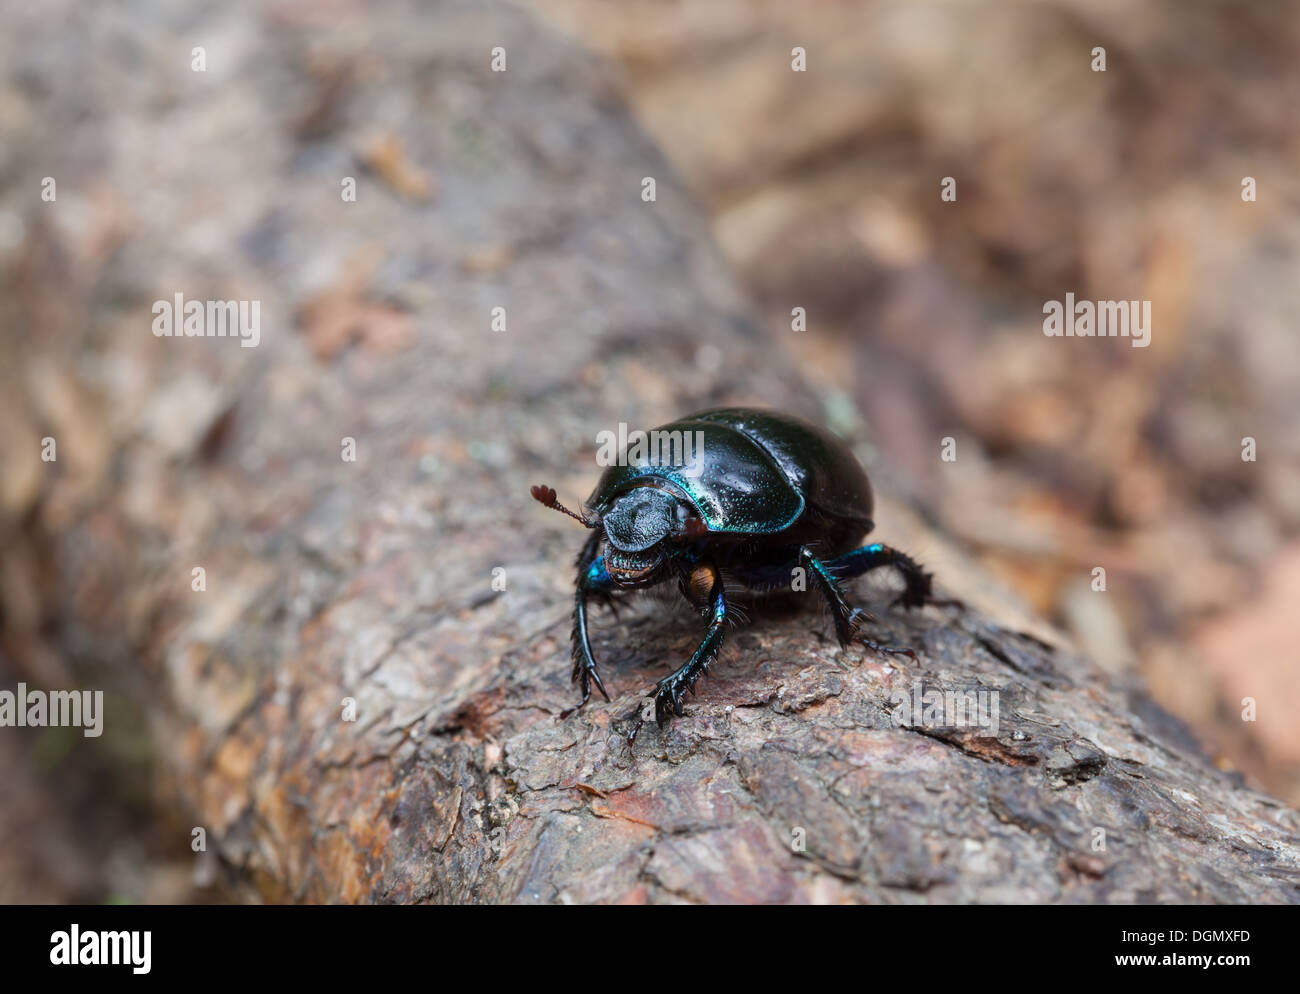 Tierra-aburrida de escarabajos Foto de stock